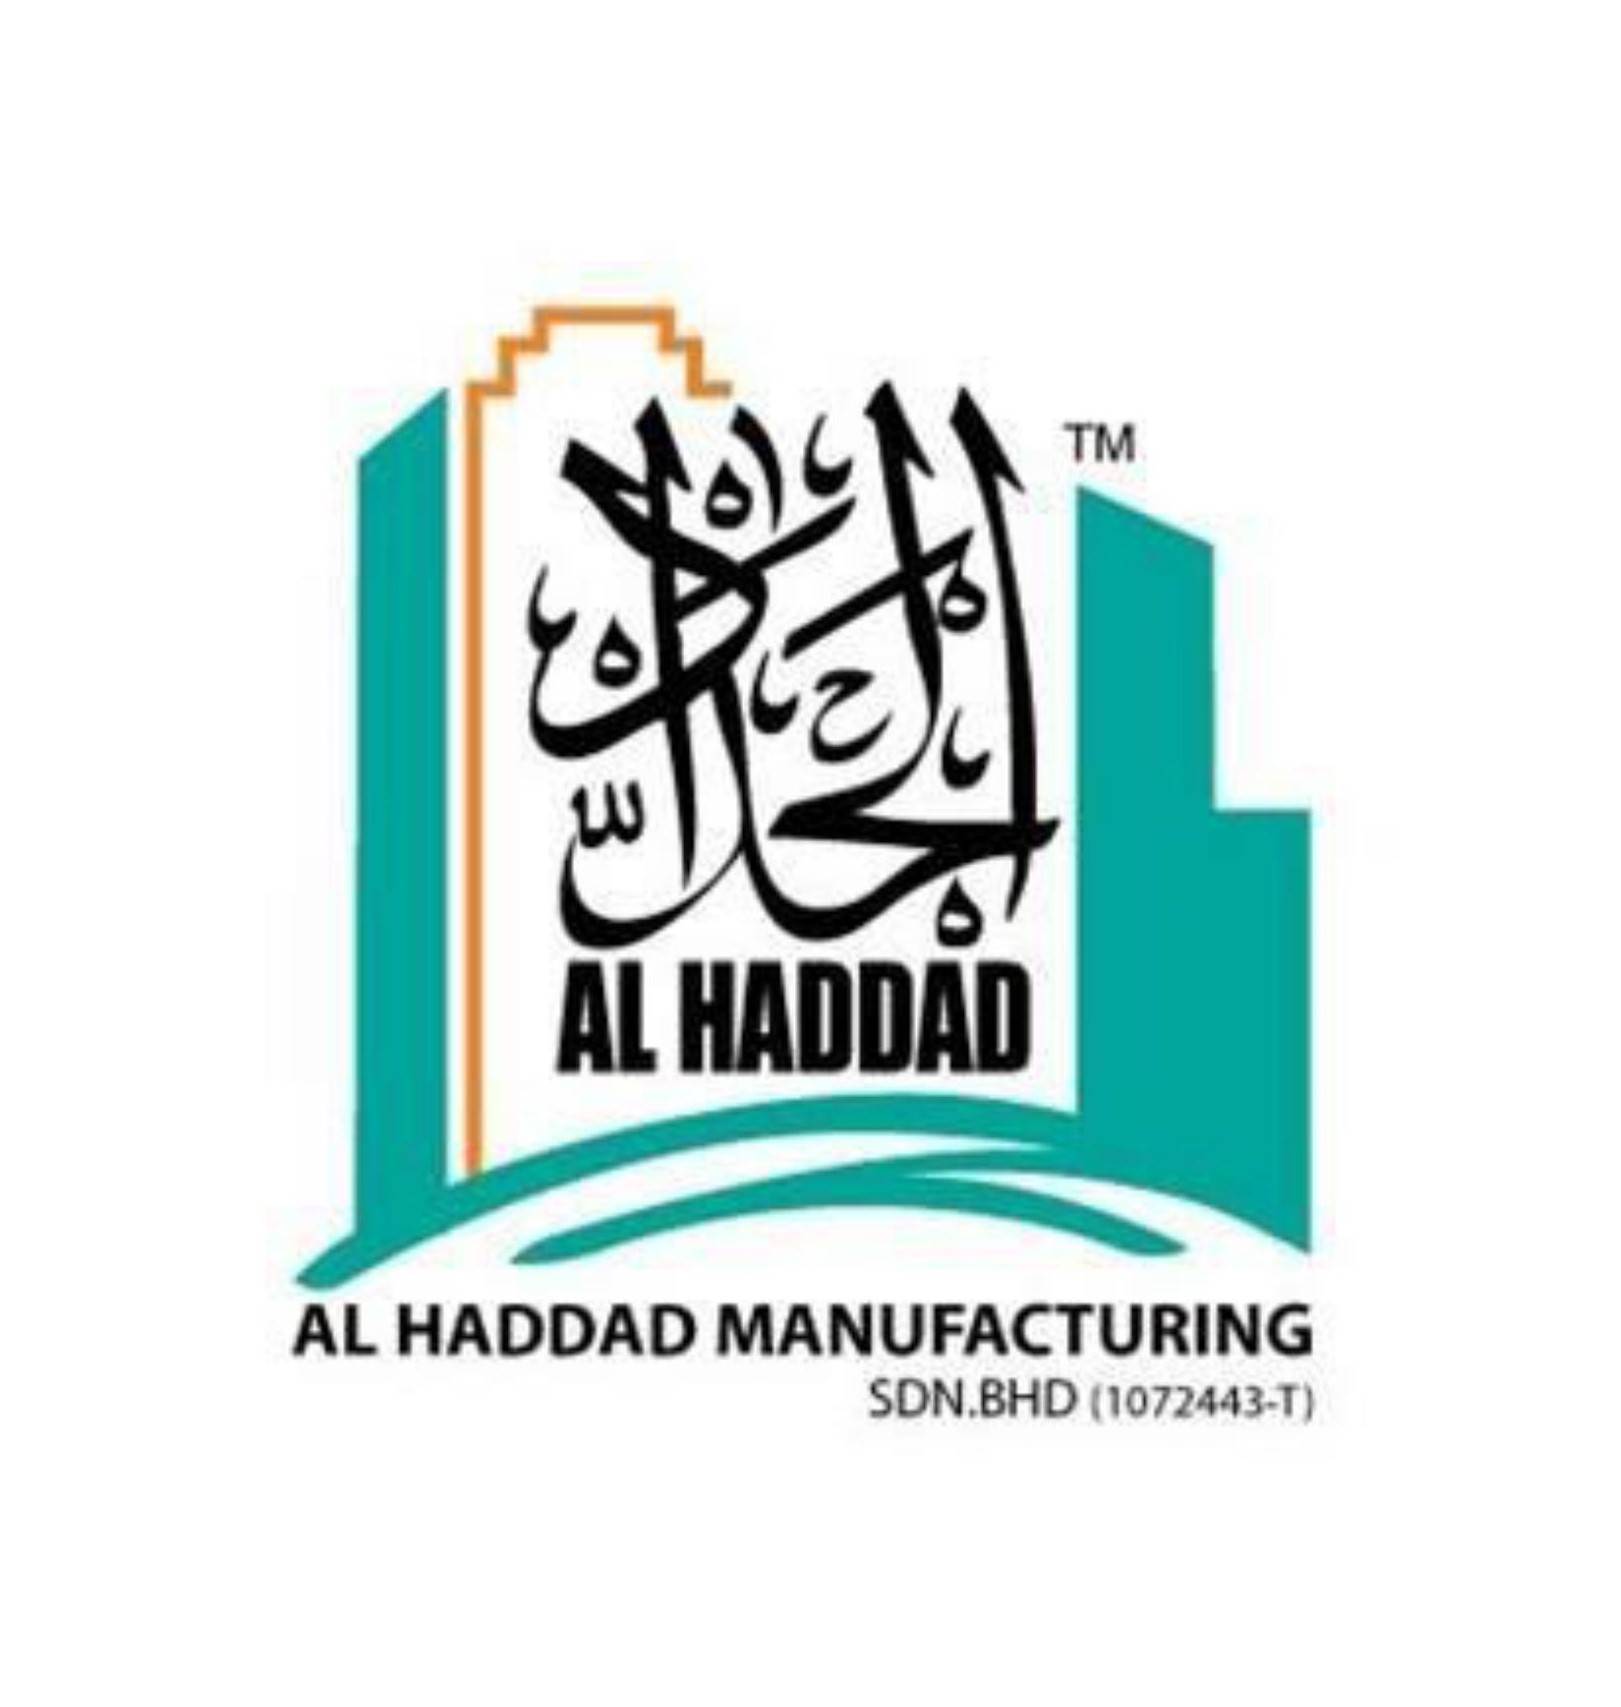 >Al Haddad Manufacturing Sdn Bhd